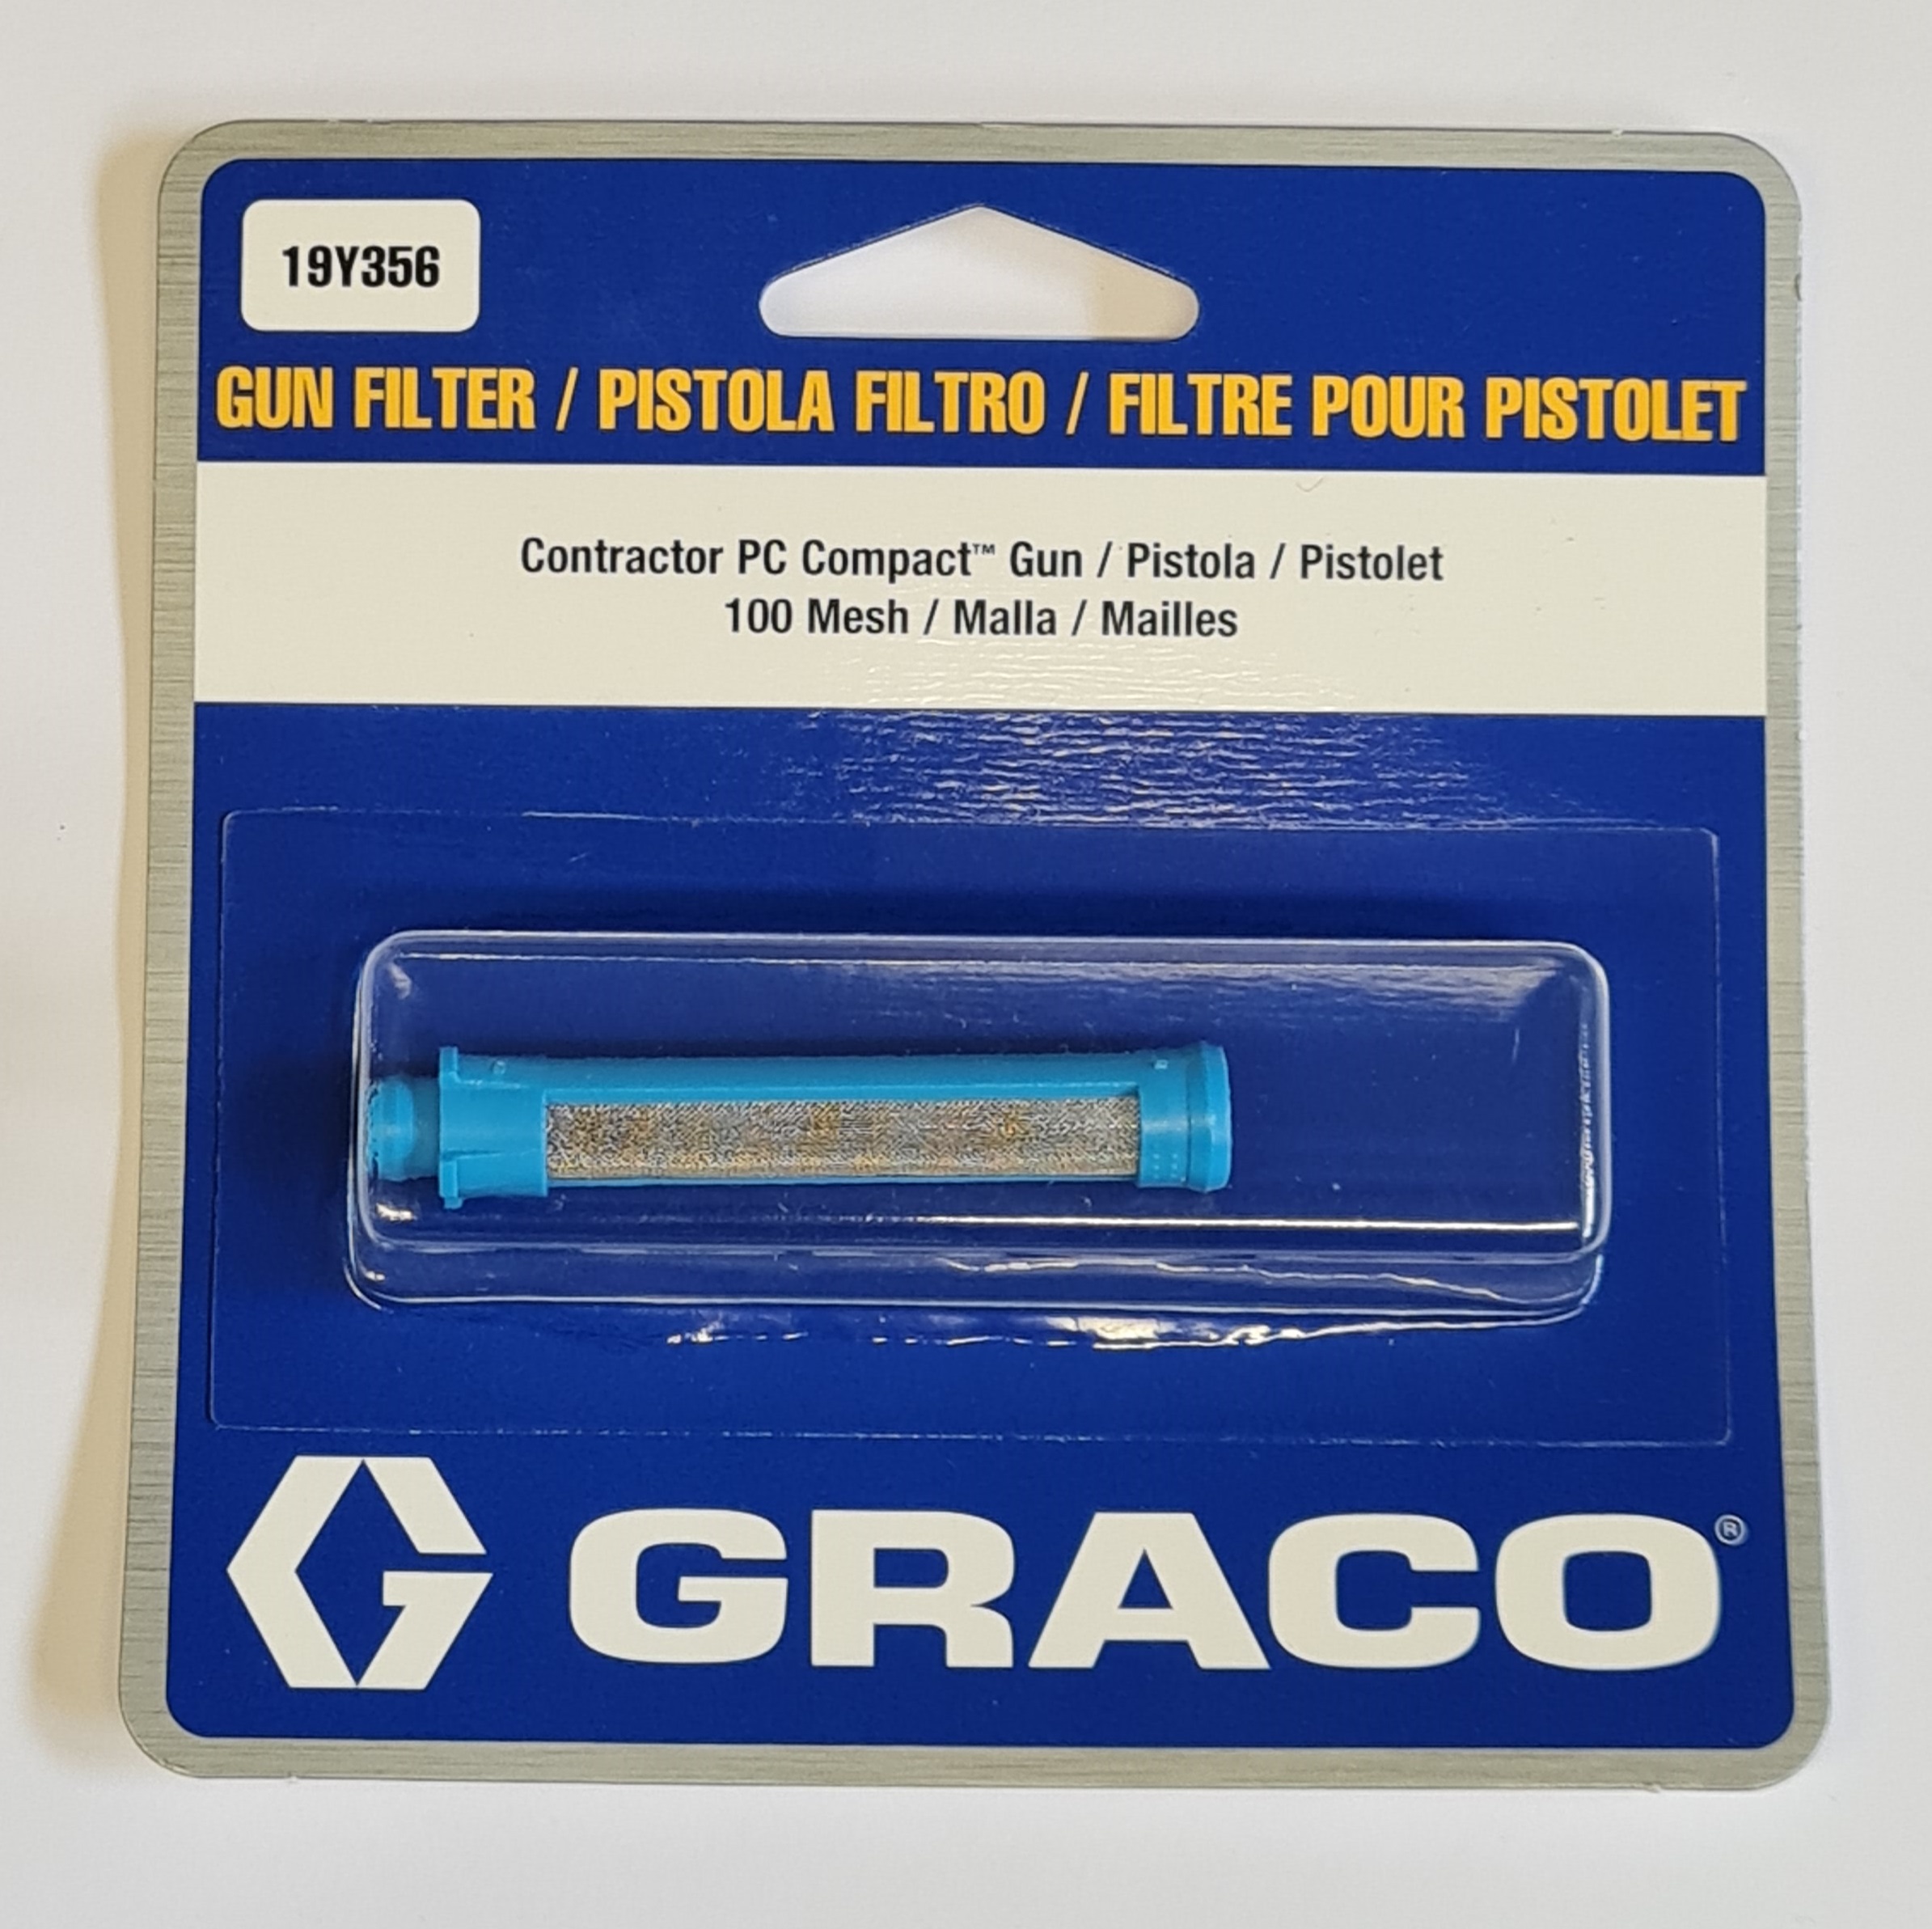 19Y356 Graco Contractor PC Compact Pistolenfilter 100 mesh blau